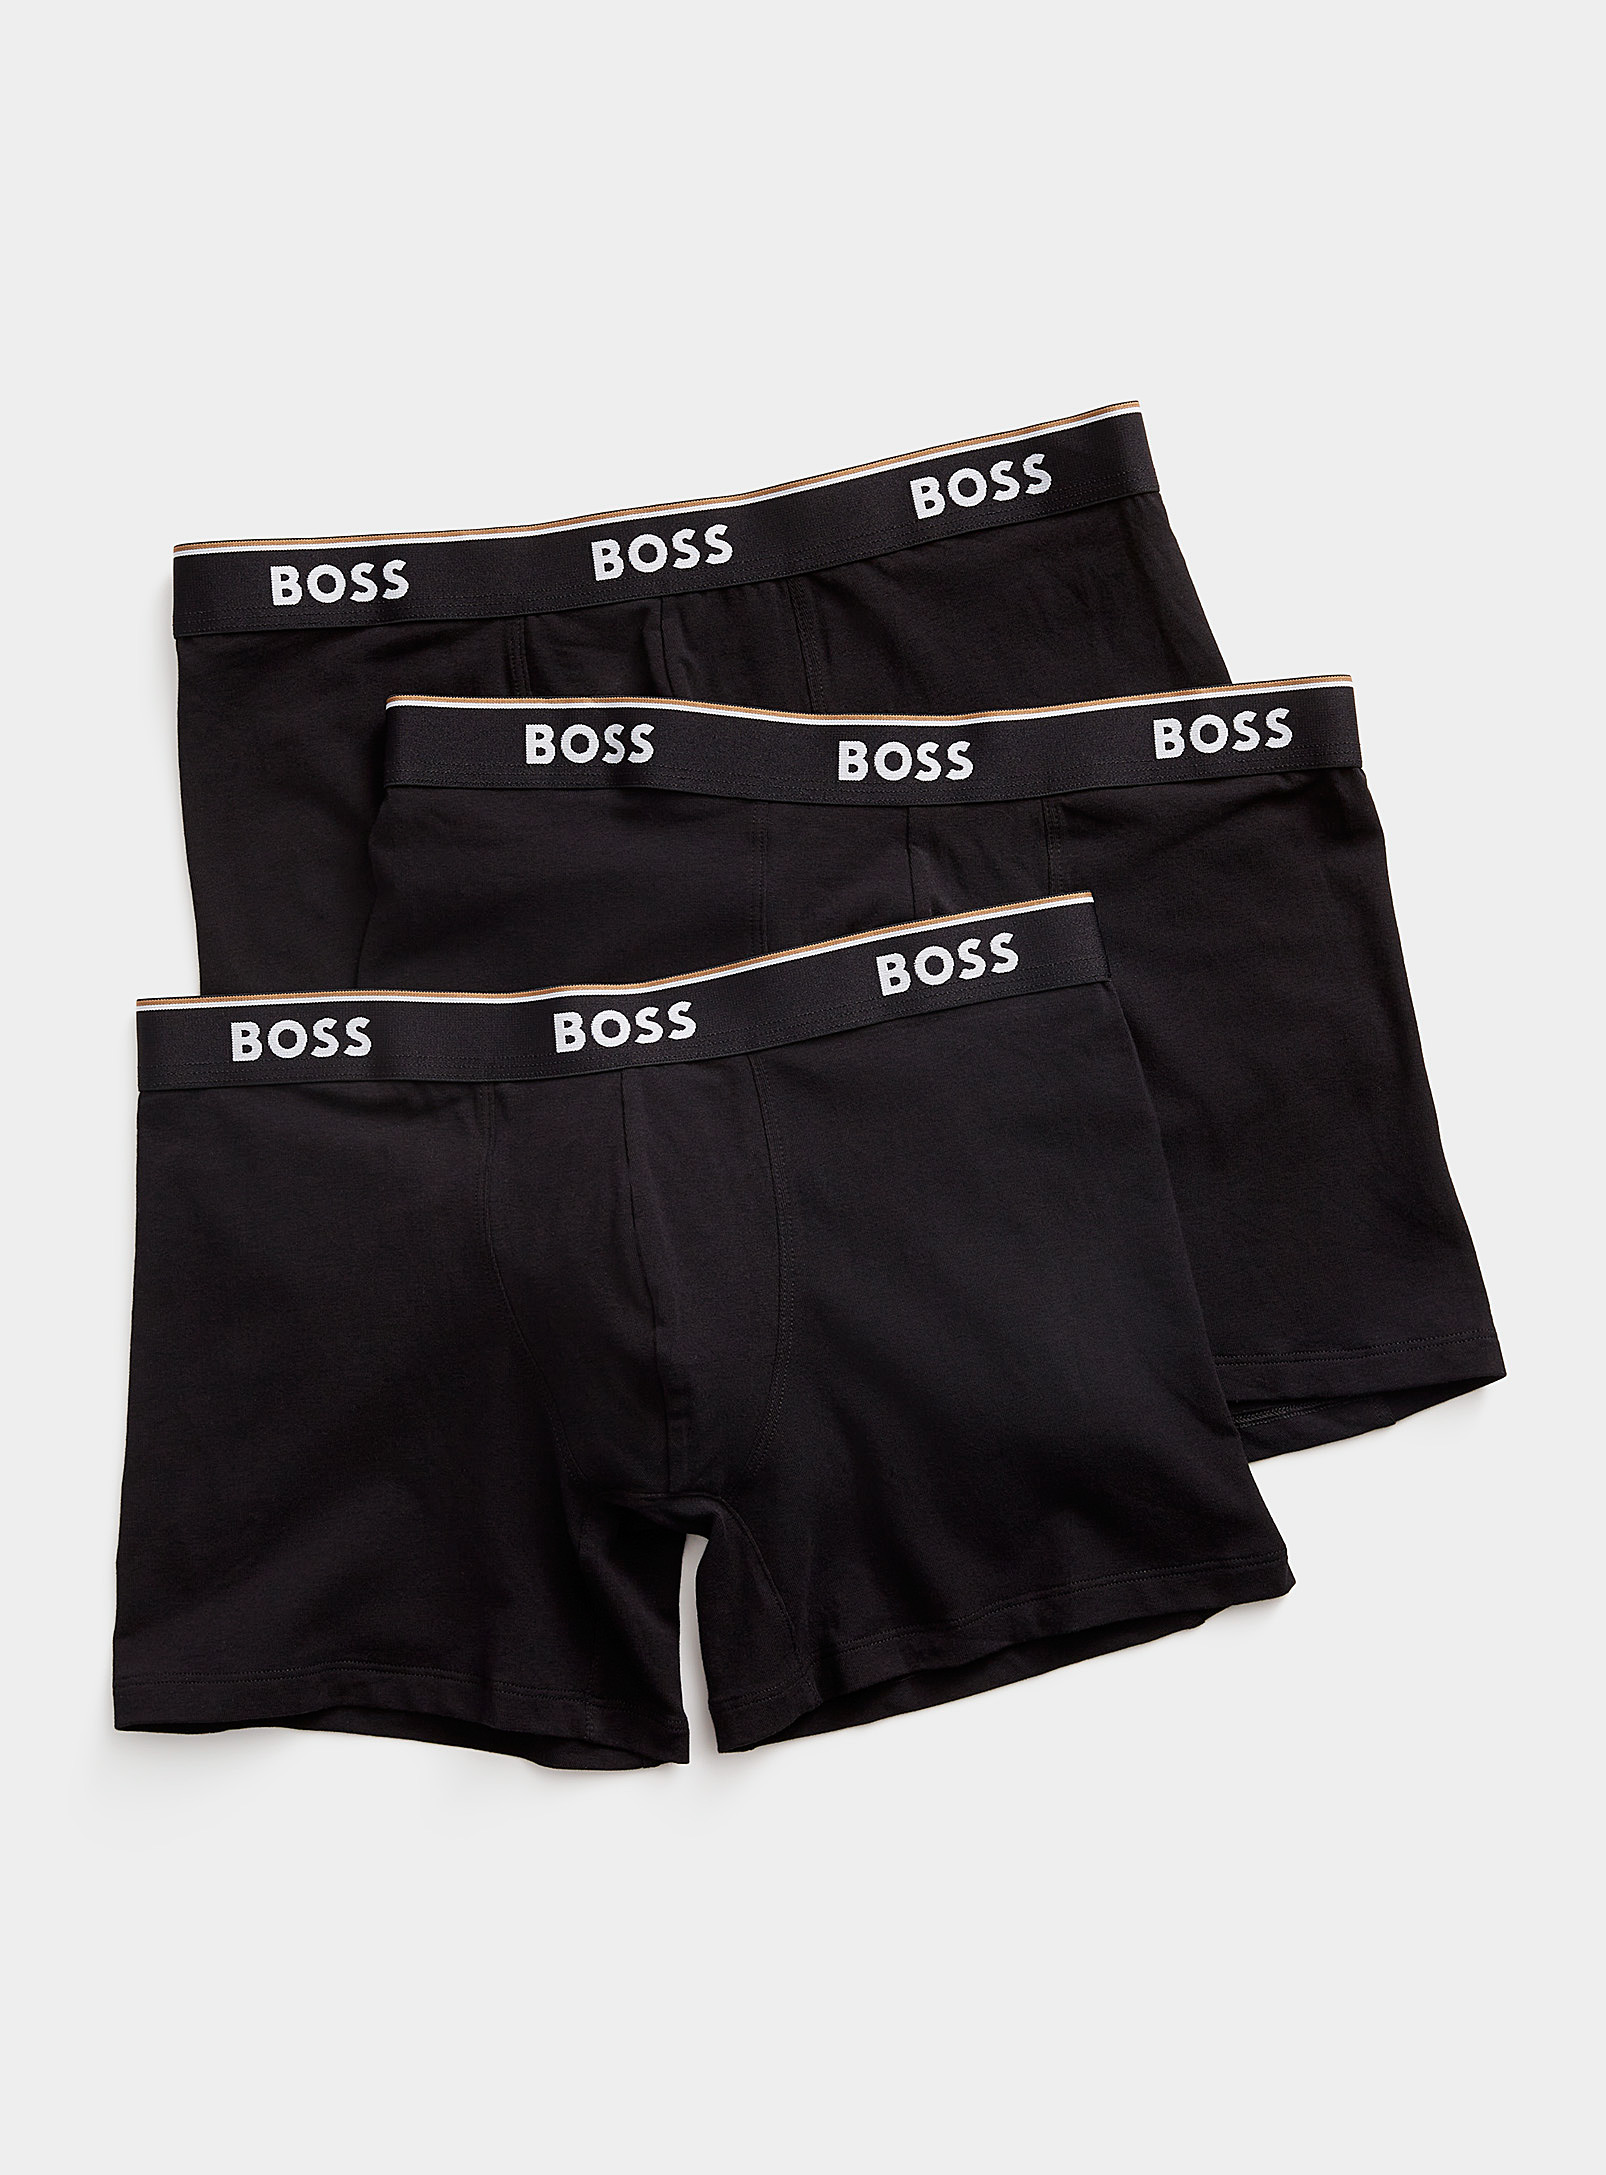 BOSS - Les boxeurs longs noirs taille logo Emballage de 3